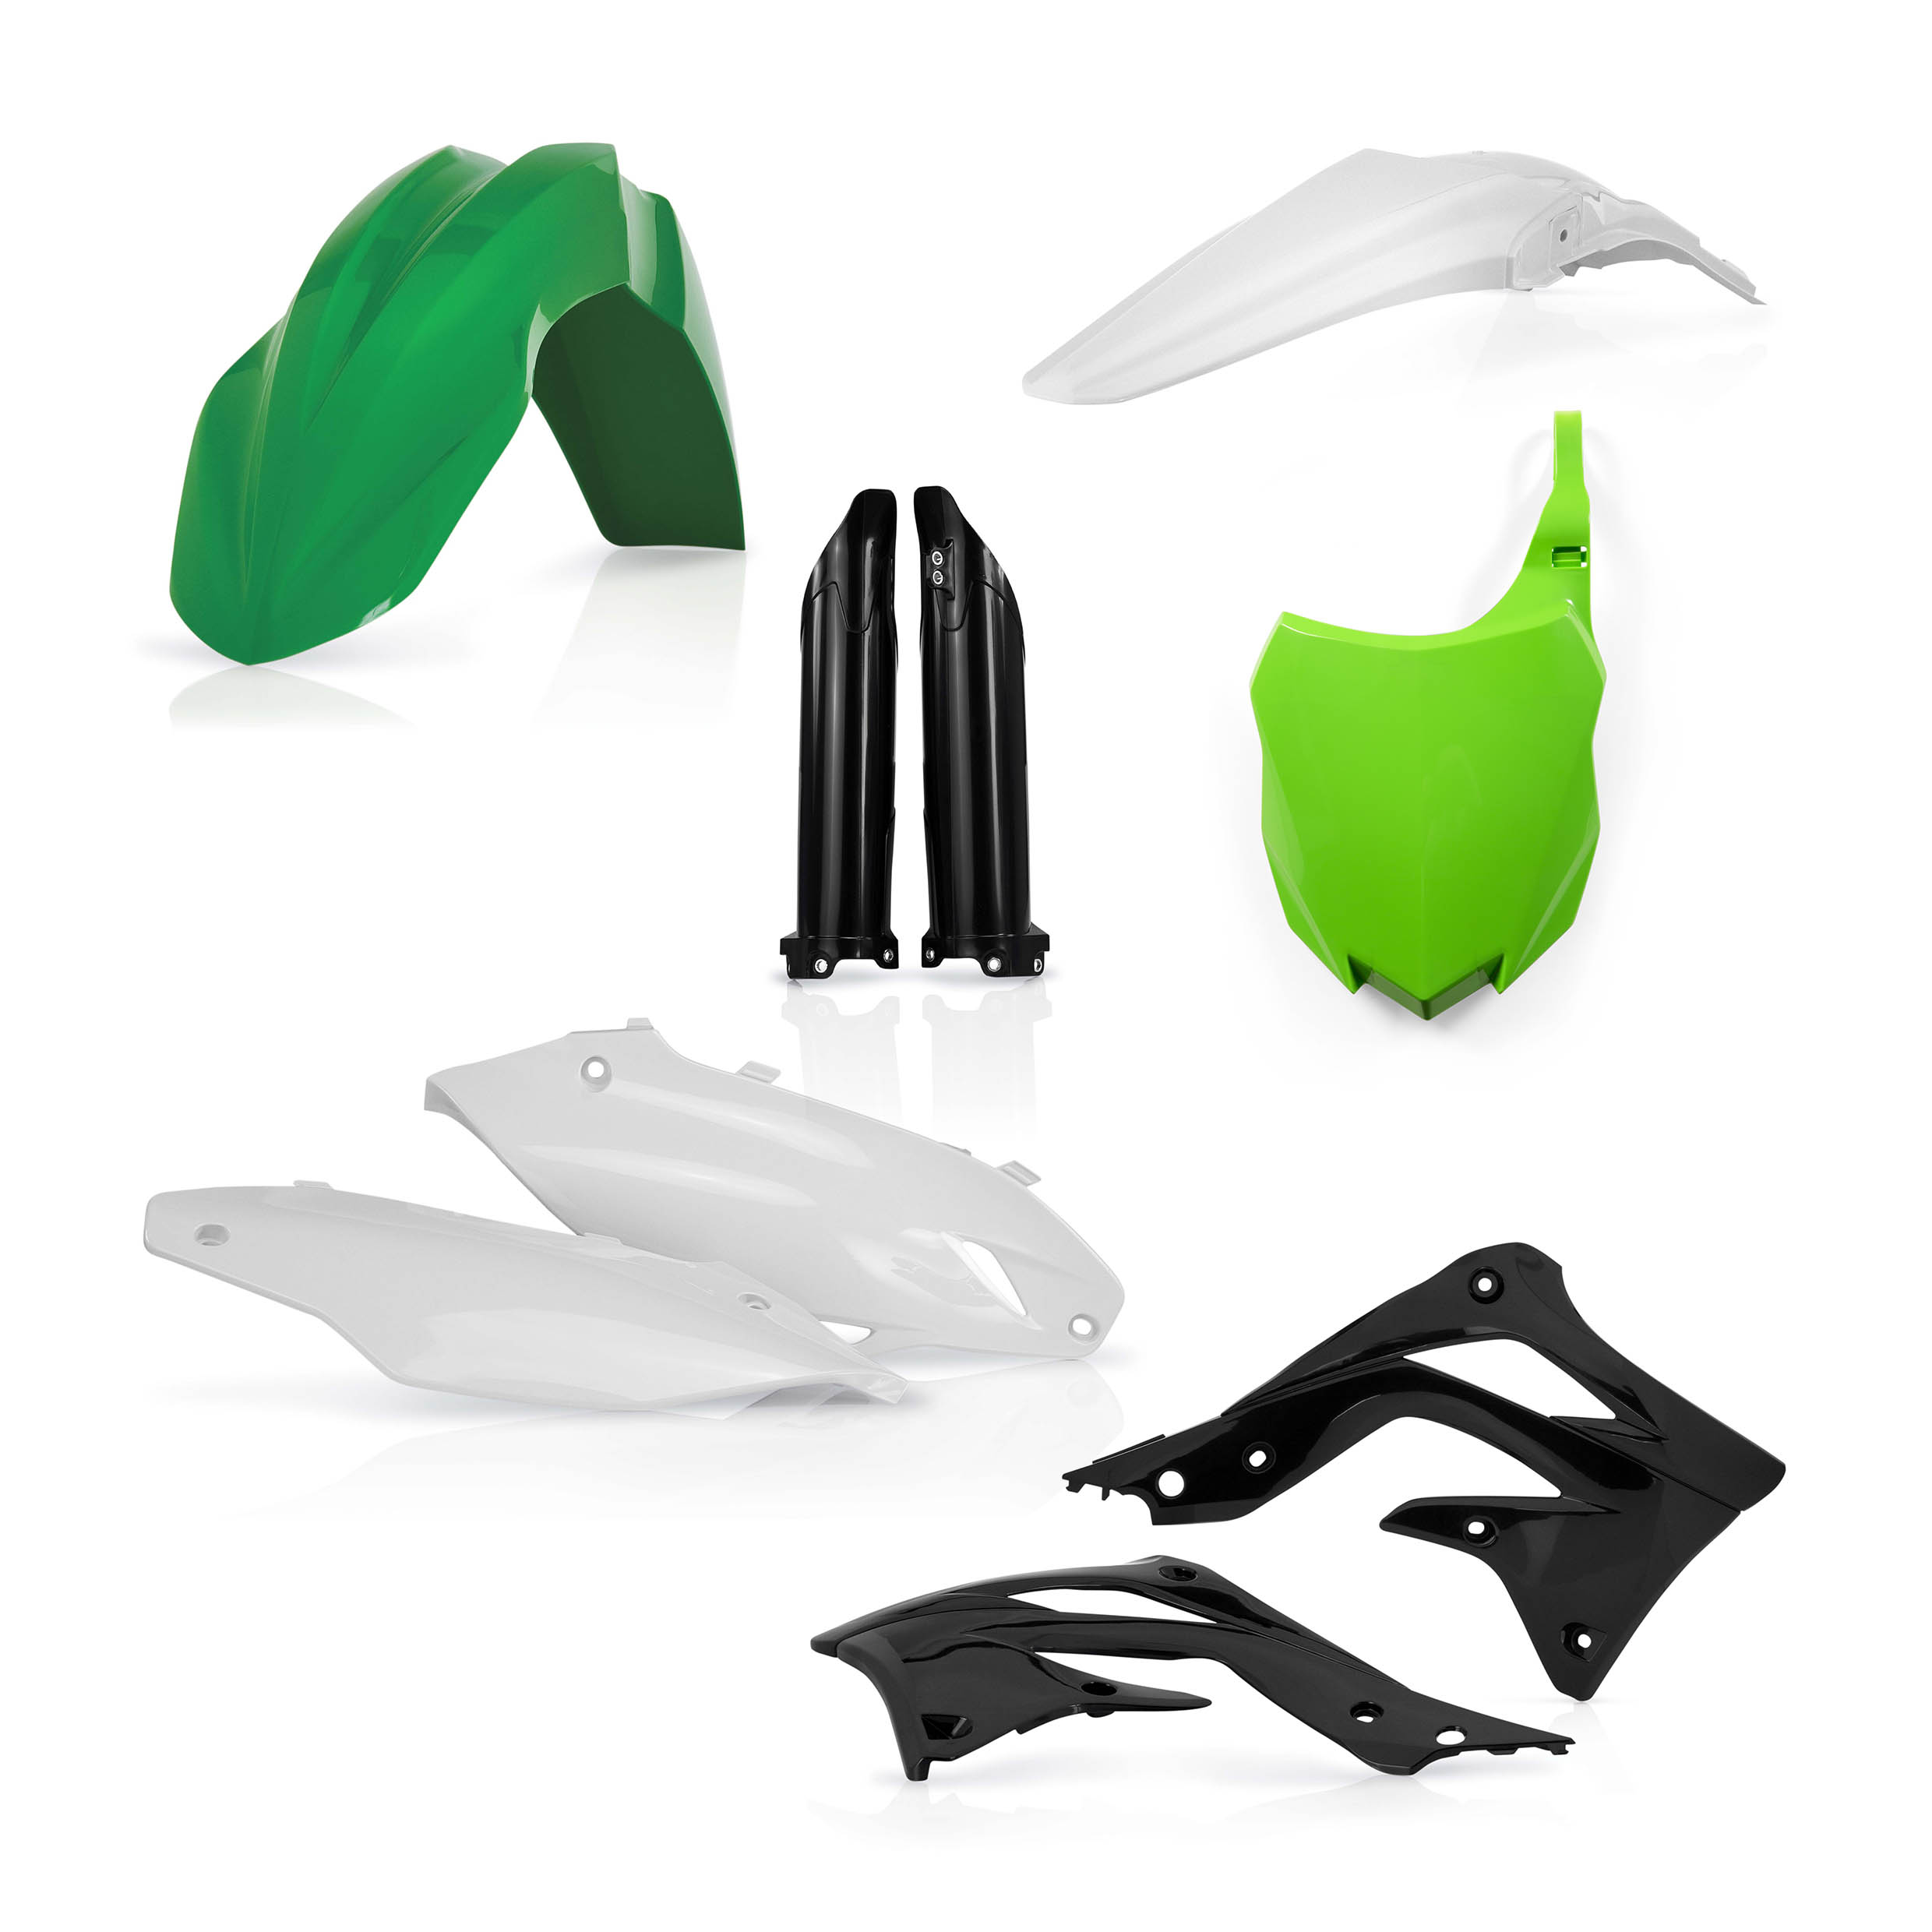 Plastikteile für deine Kawasaki KX 450 in grün-schwarz bestehend aus Kotflügel vorn Kotflügel hinten Kühlerspoiler Seitenteile Gabelschützer Startnummerntafel